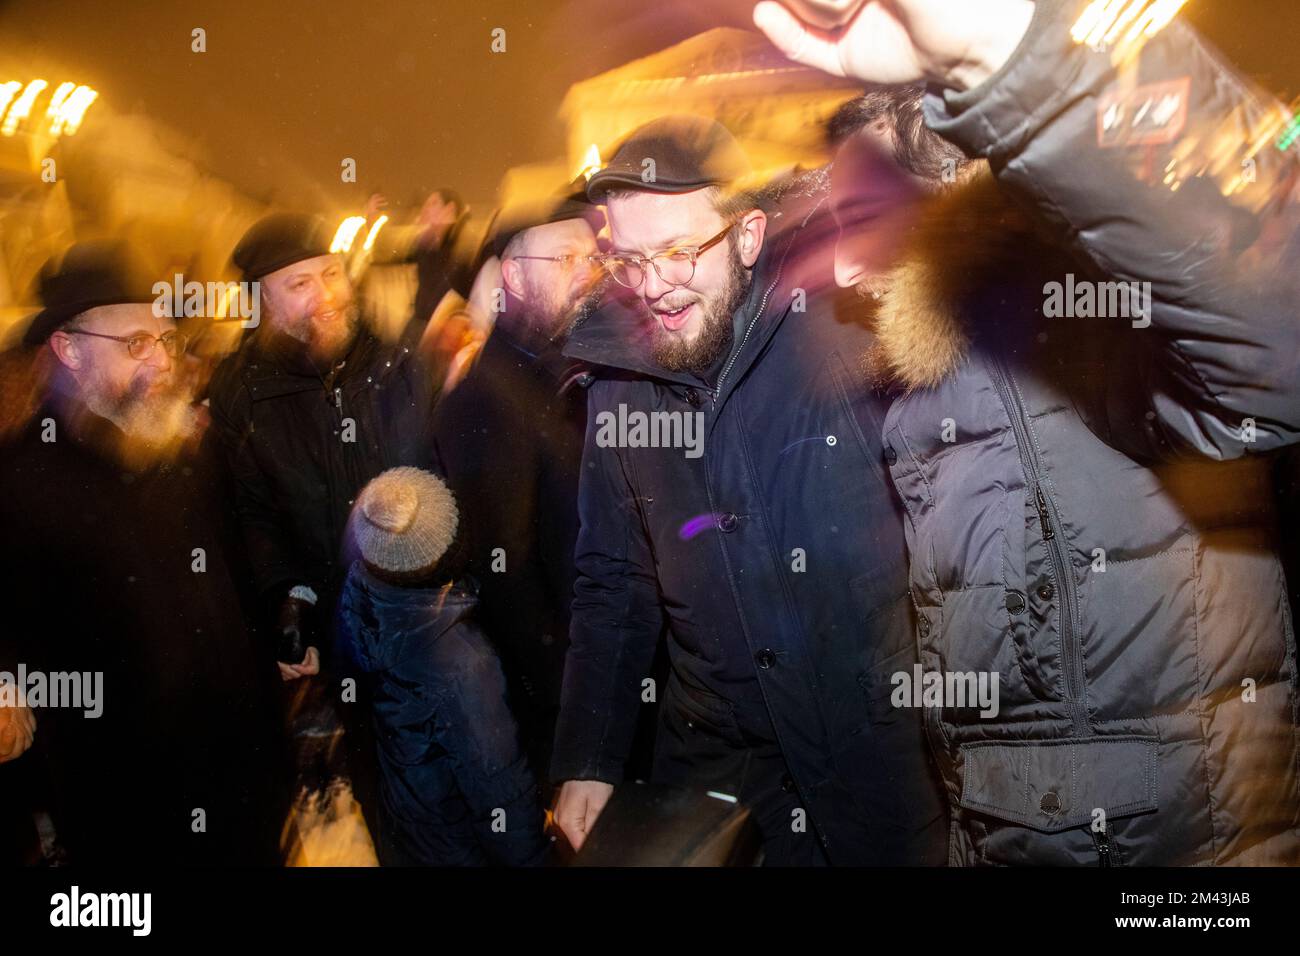 Moskau, Russland. 18.. Dezember 2022. Die Menschen tanzen auf einer Veranstaltung zur Feier von Hanukka auf dem Platz der Revolution in Moskau, Russland. Hanukkah ist ein jüdisches Festival, das der Wiedererlangung Jerusalems im 2.. Jahrhundert v. Chr. gedenkt. Dieses Jahr wird der 18-26. Dezember gefeiert. Nikolay Vinokurov/Alamy Live News Stockfoto